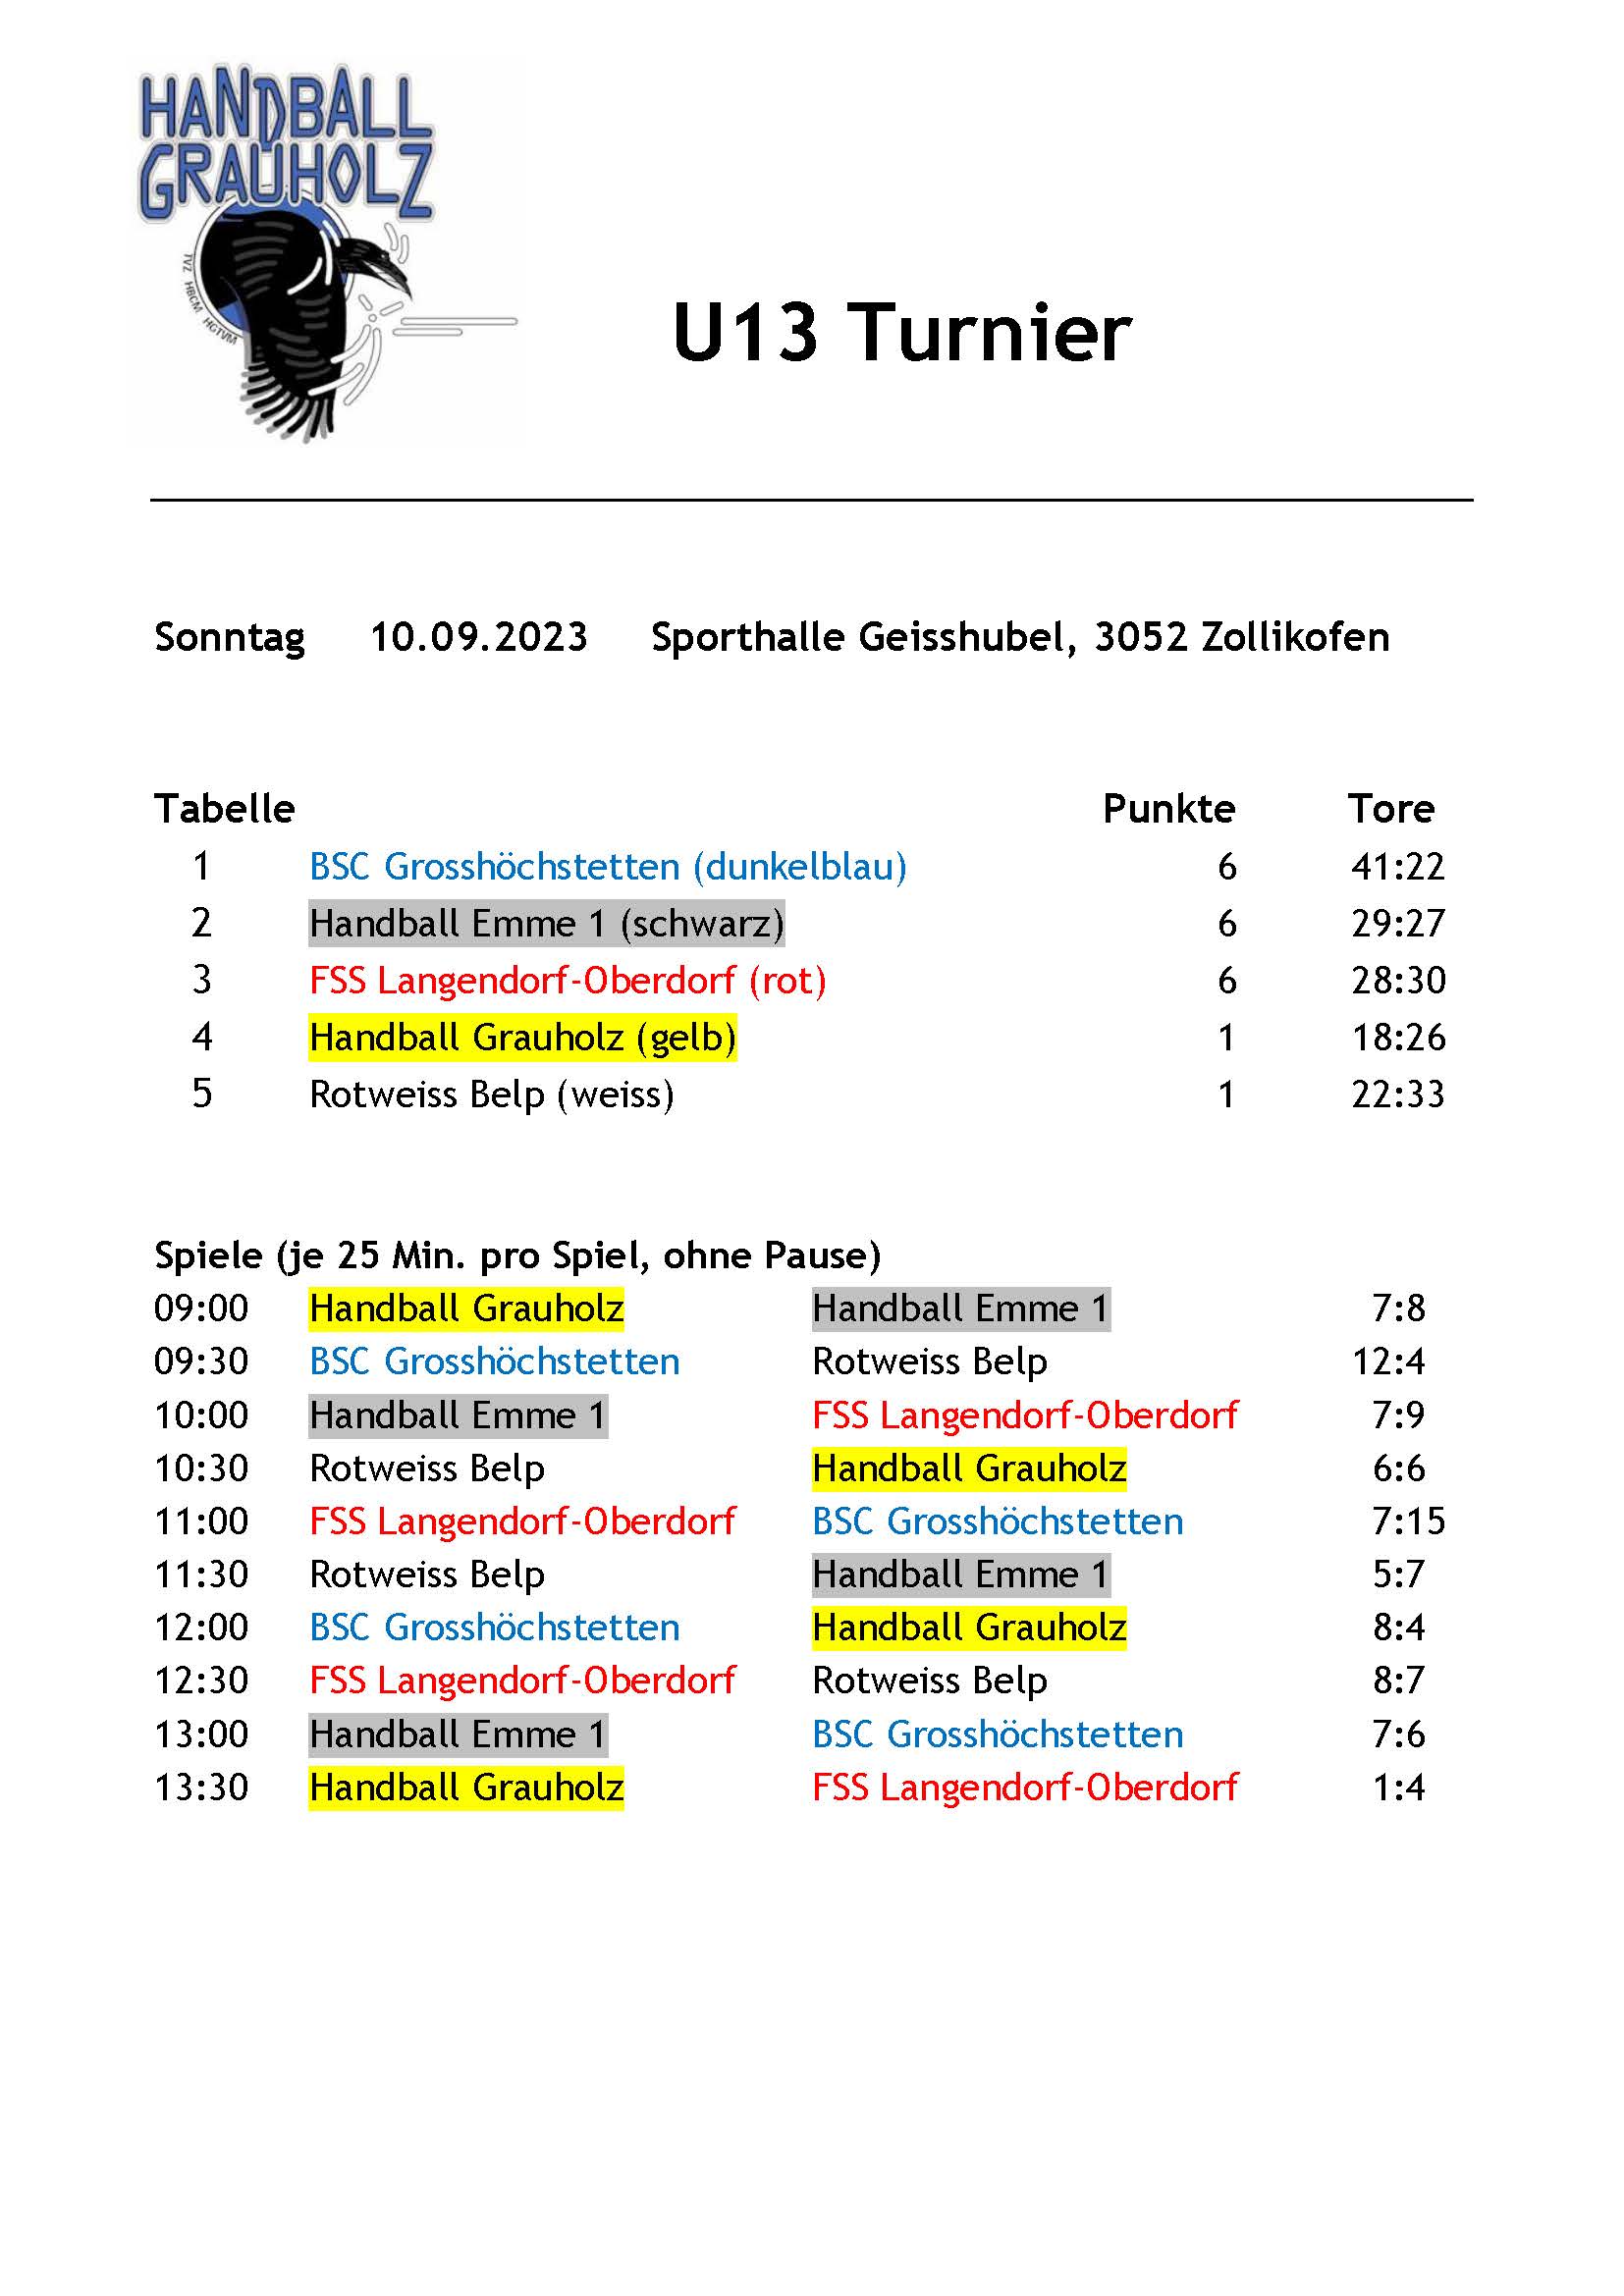 Resultate U13 Turnier – zu Gast bei Handball Grauholz